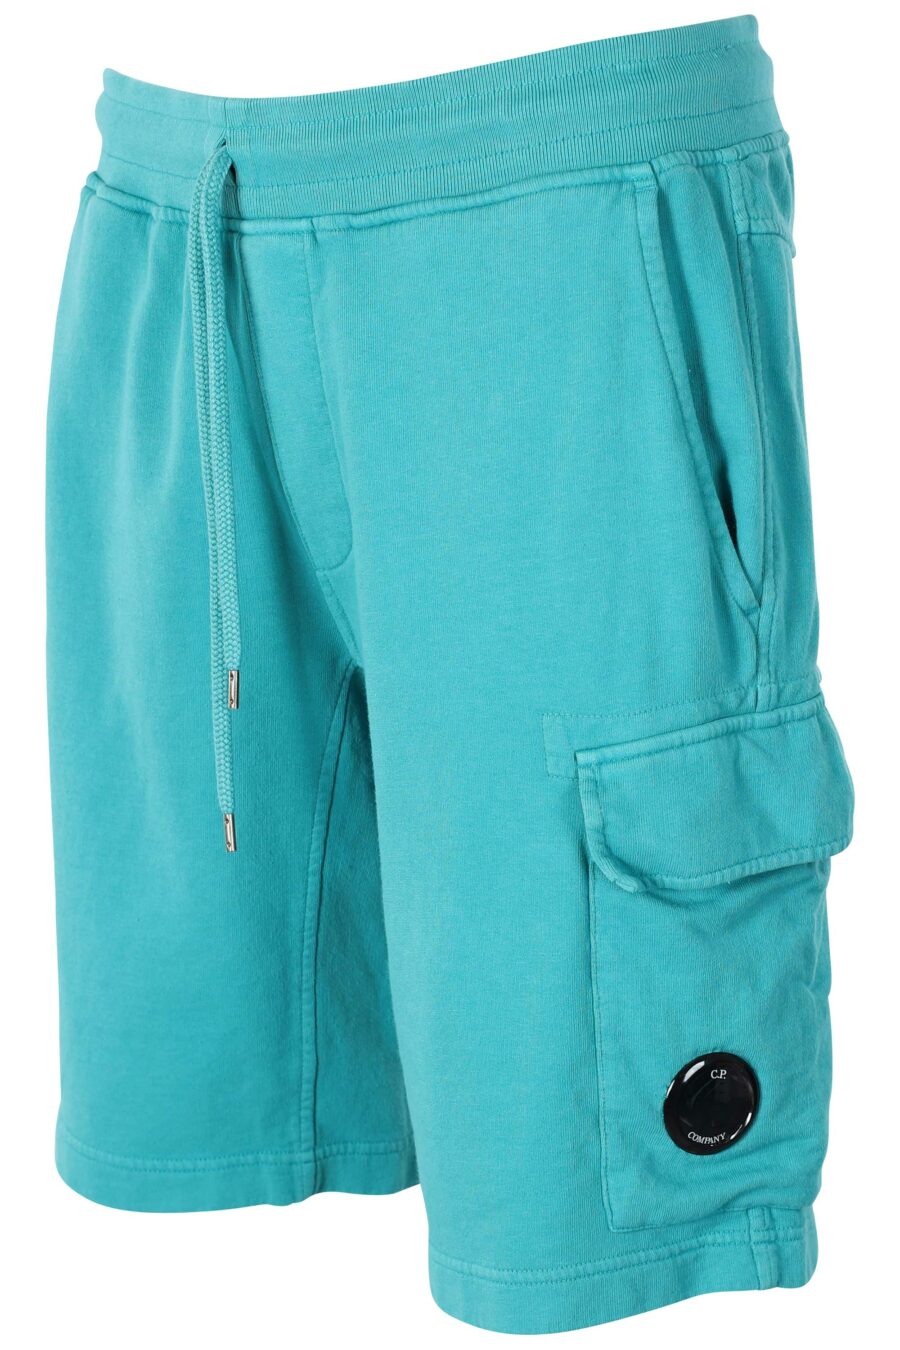 Pantalón de chándal corto color turquesa estilo cargo con minilogo circular - IMG 9552